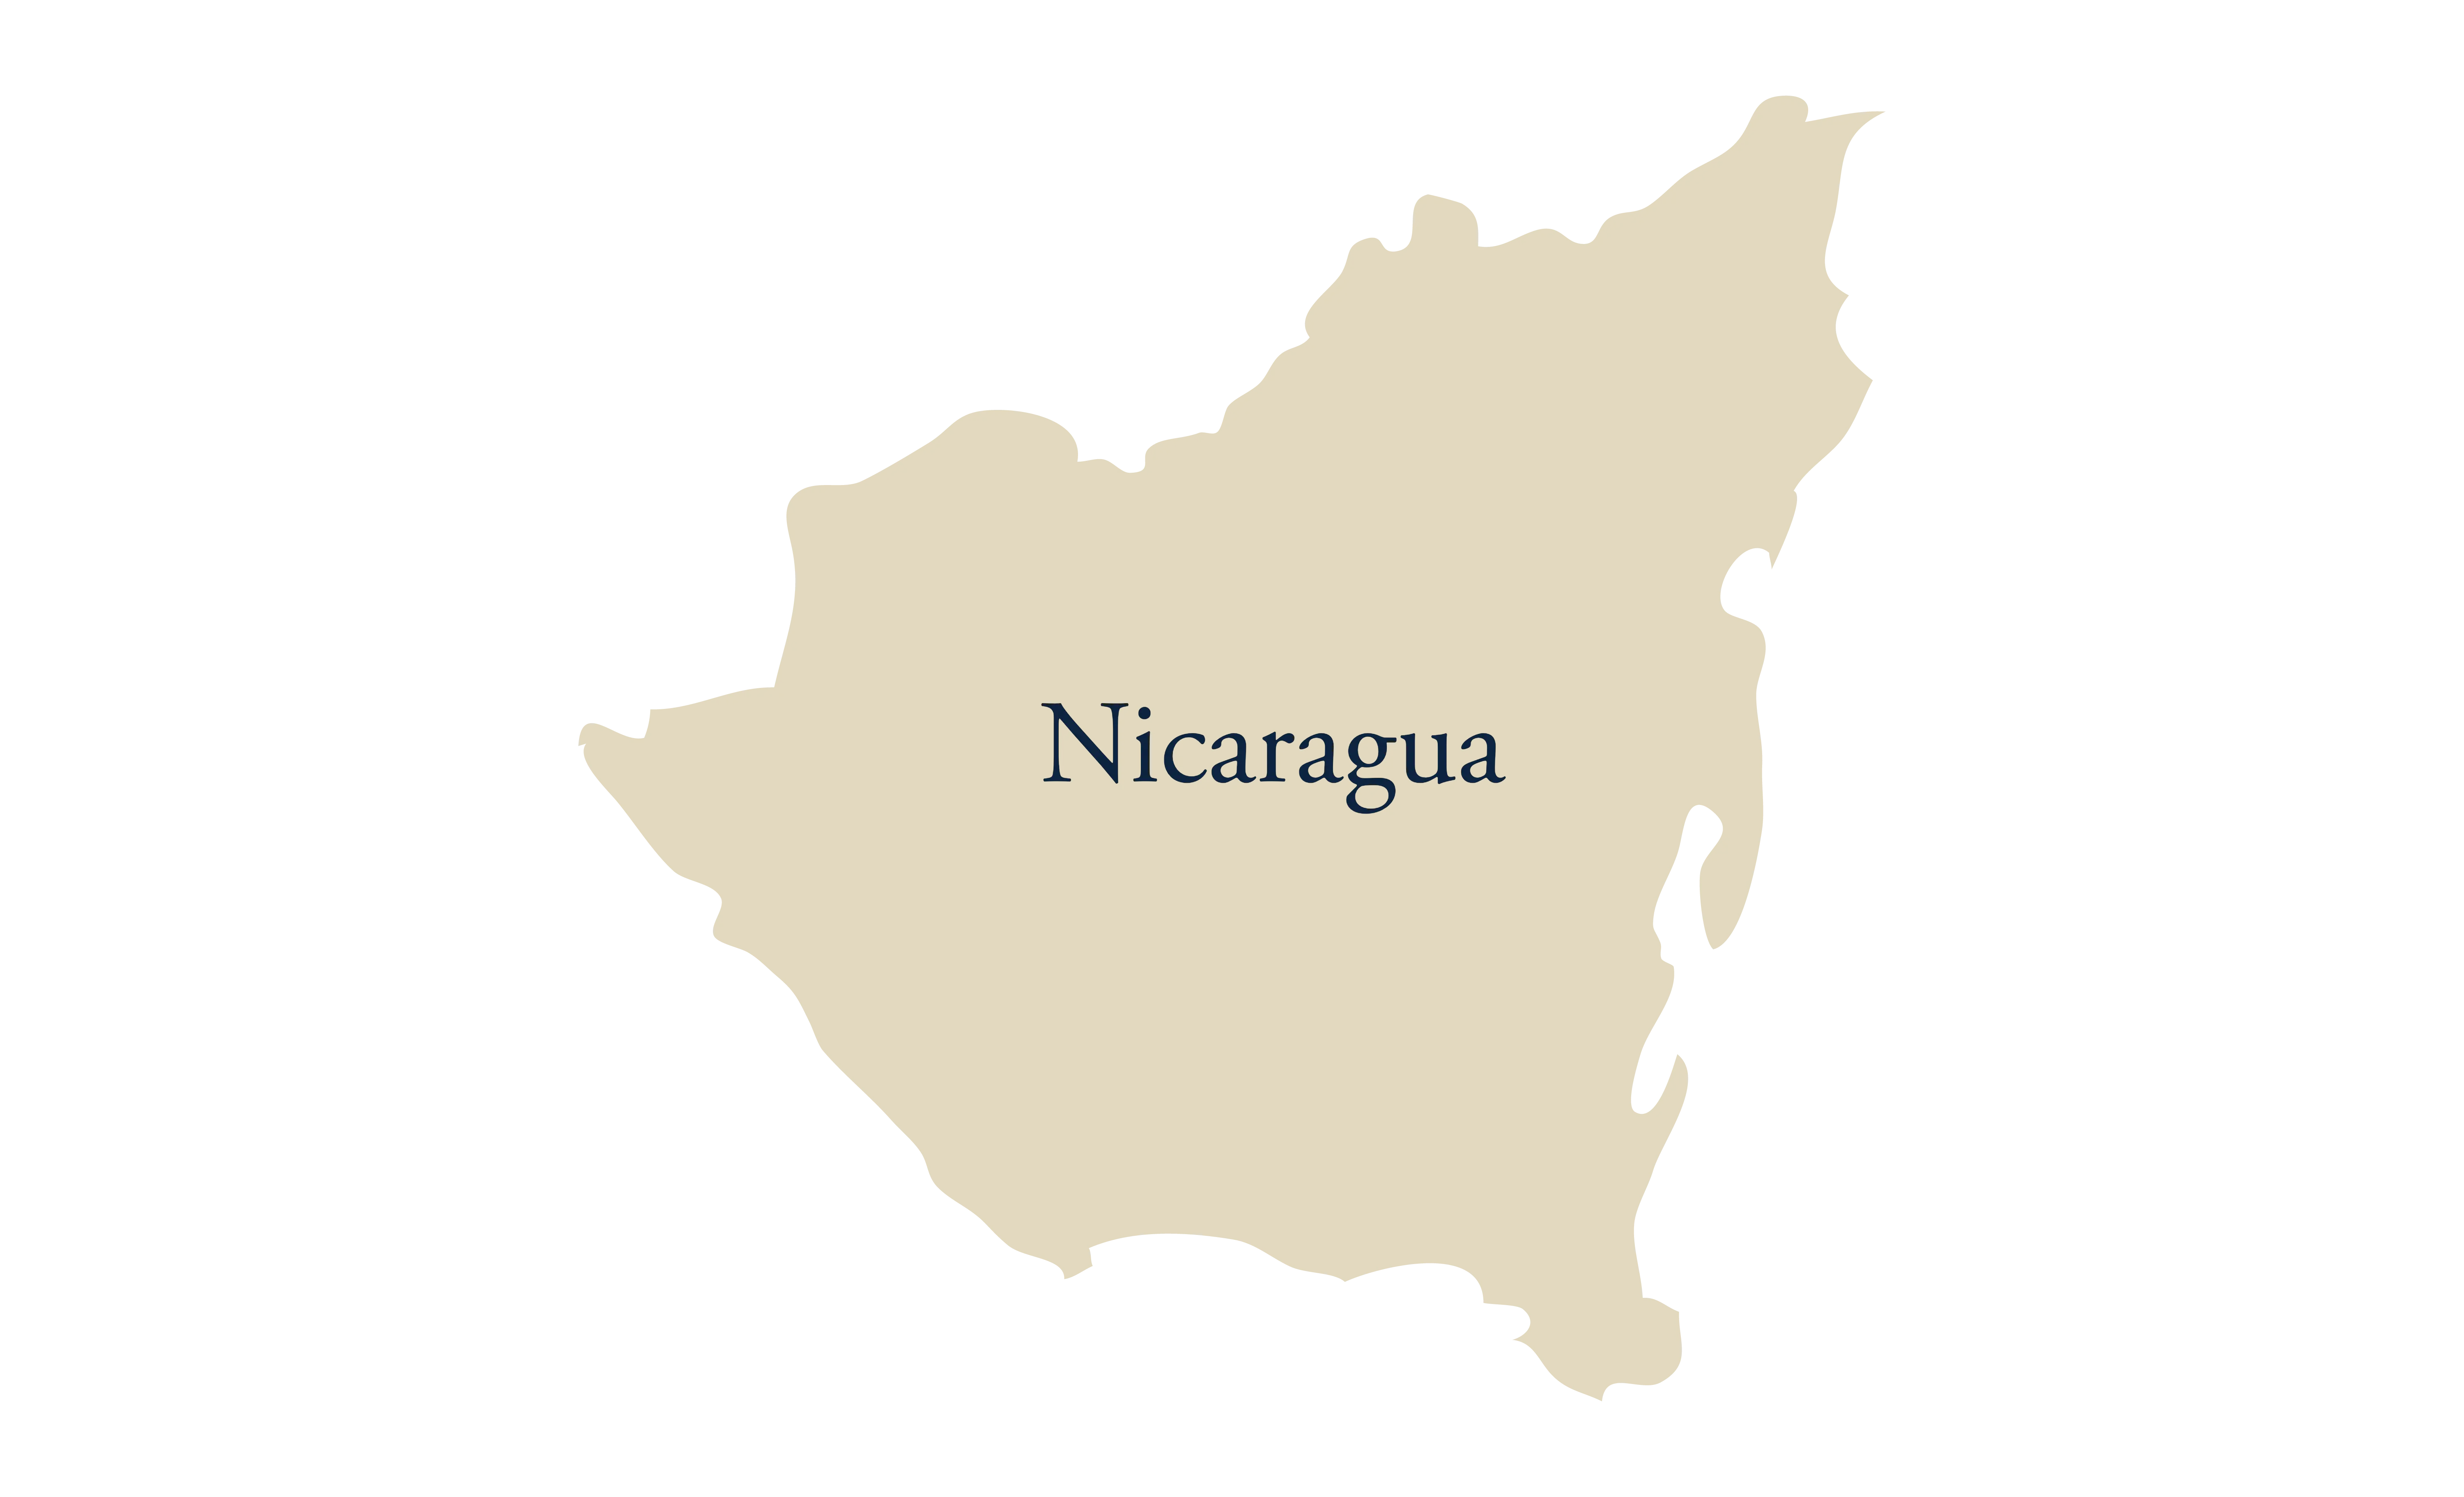 Outline of Nicaragua